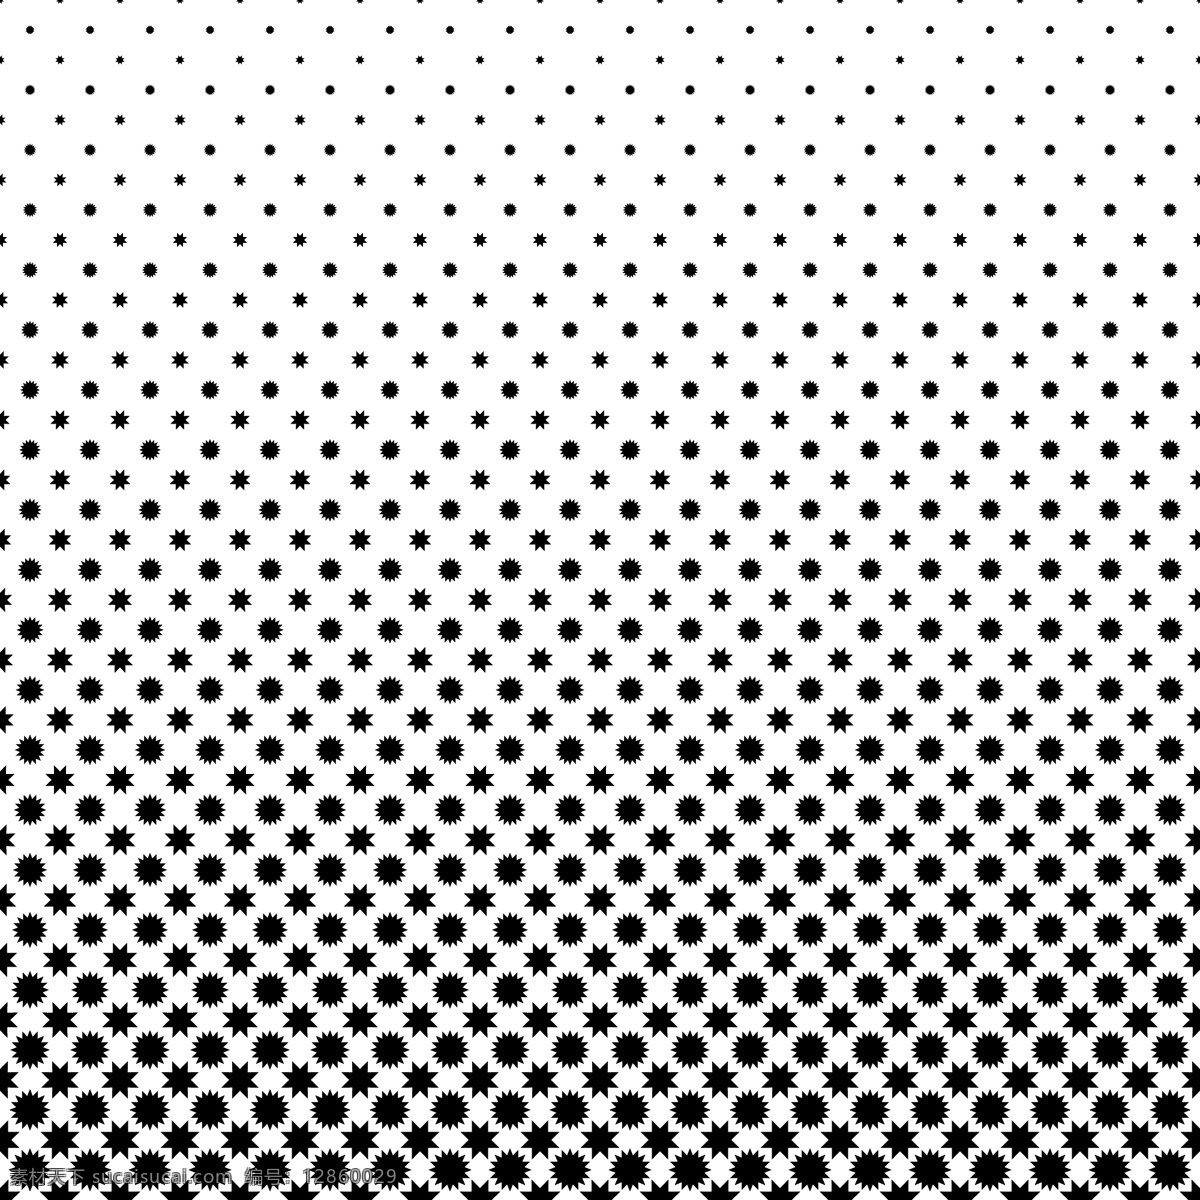 黑白星型 背景 图案 小册子 海报 抽象 封面 纹理 明星 模板 几何 布局 多边形 墙纸 黑色 网络 演示 图形